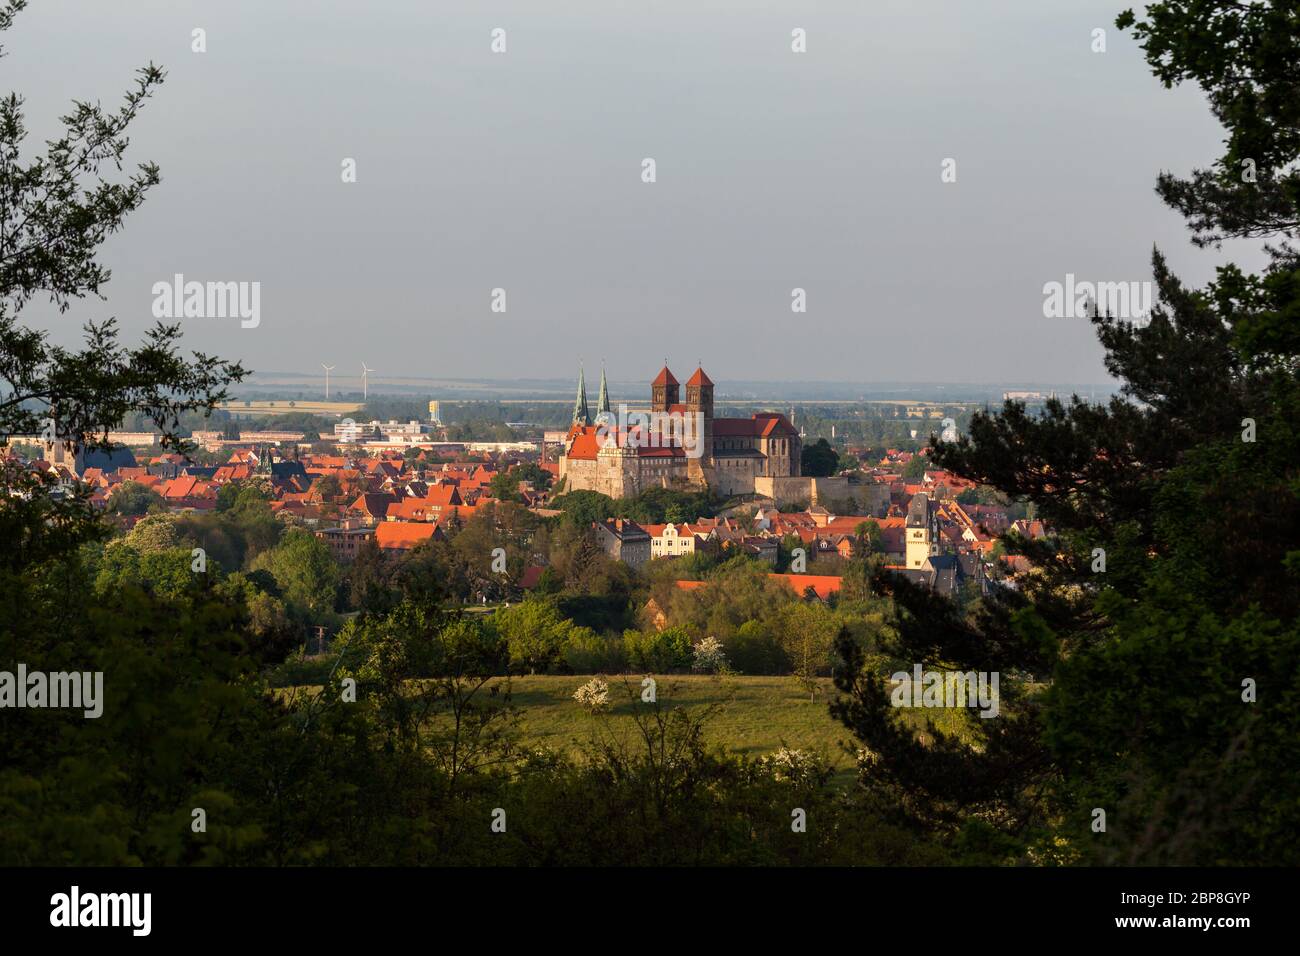 Blick auf das Schloss und die Stiftskirche von Quedlinburg Foto Stock